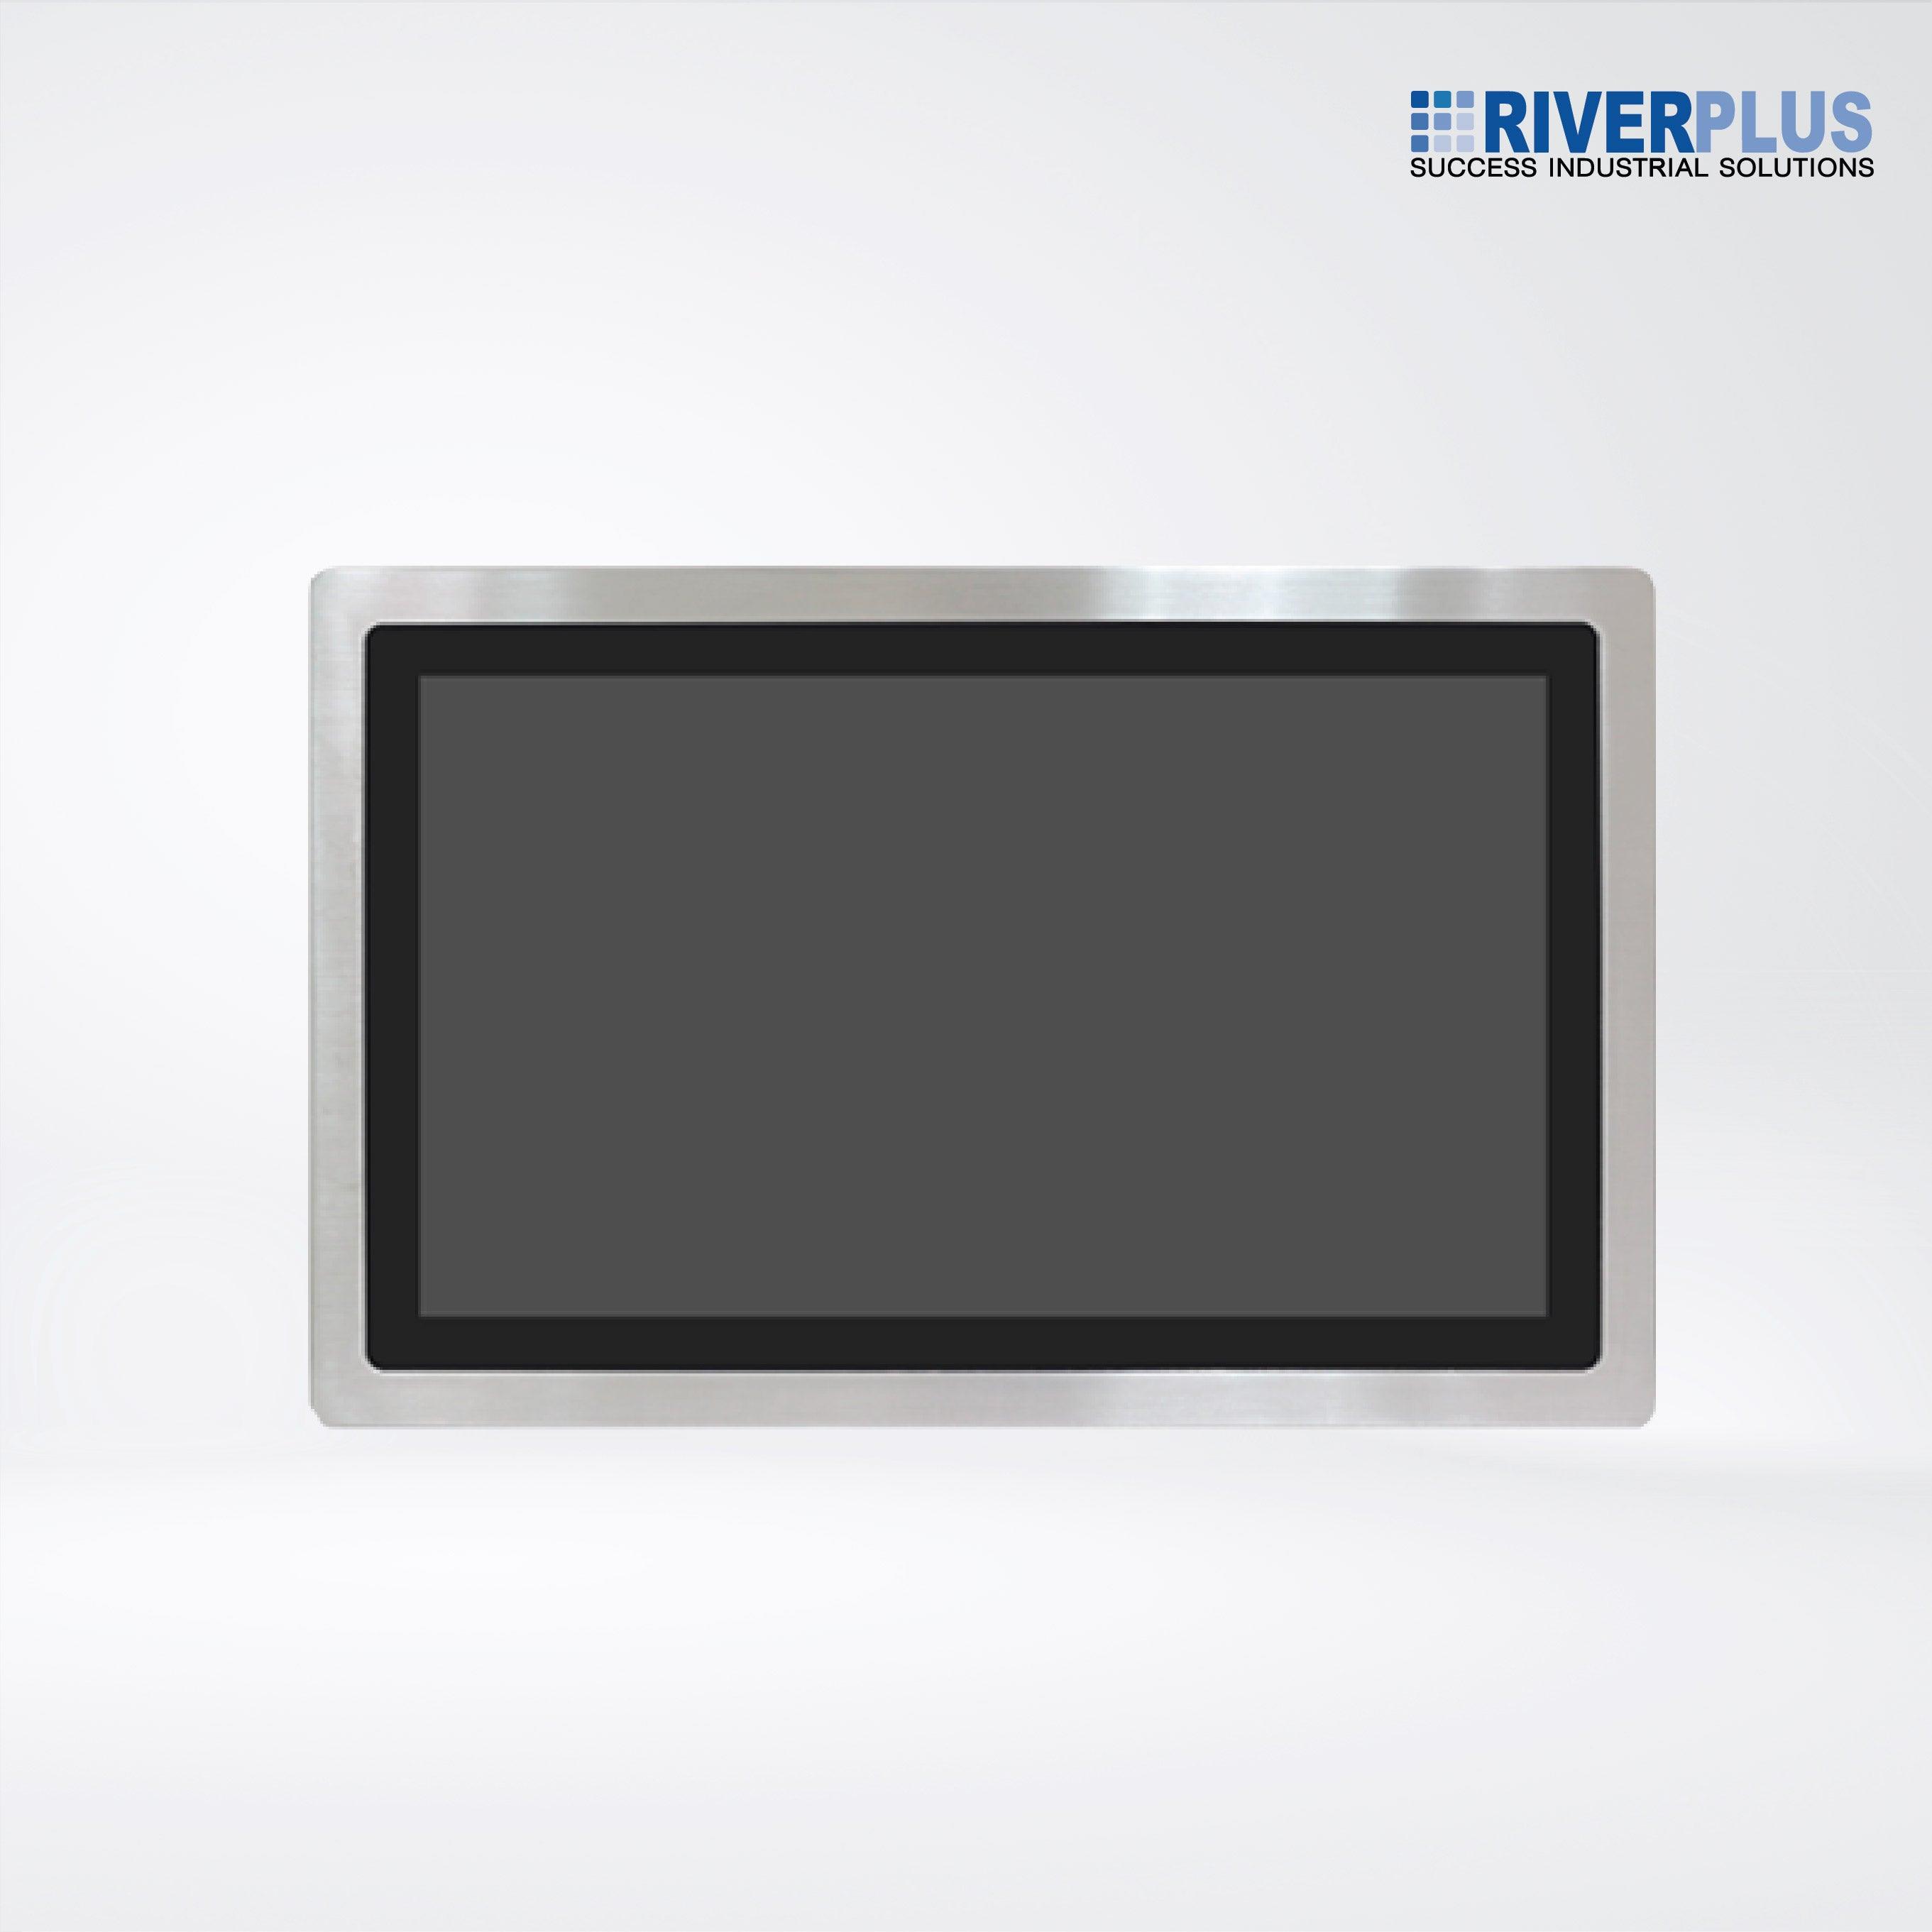 AEx-821P 21.5” Intel Celeron N2930 IP66 Stainless Steel Panel PC - Riverplus